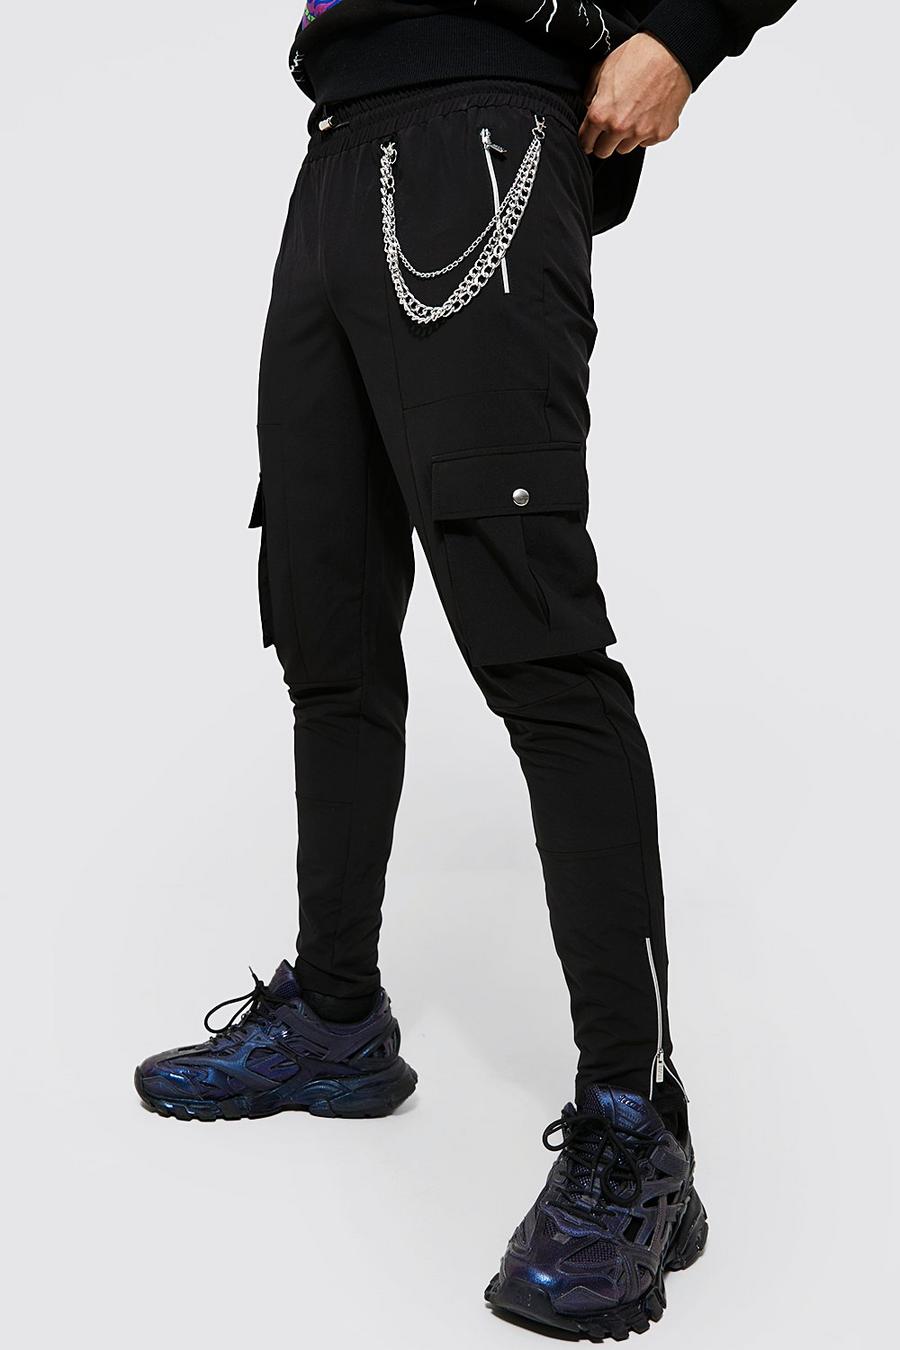 Pantaloni Slim Fit in Stretch con catene e tasche Cargo in rilievo, Black nero